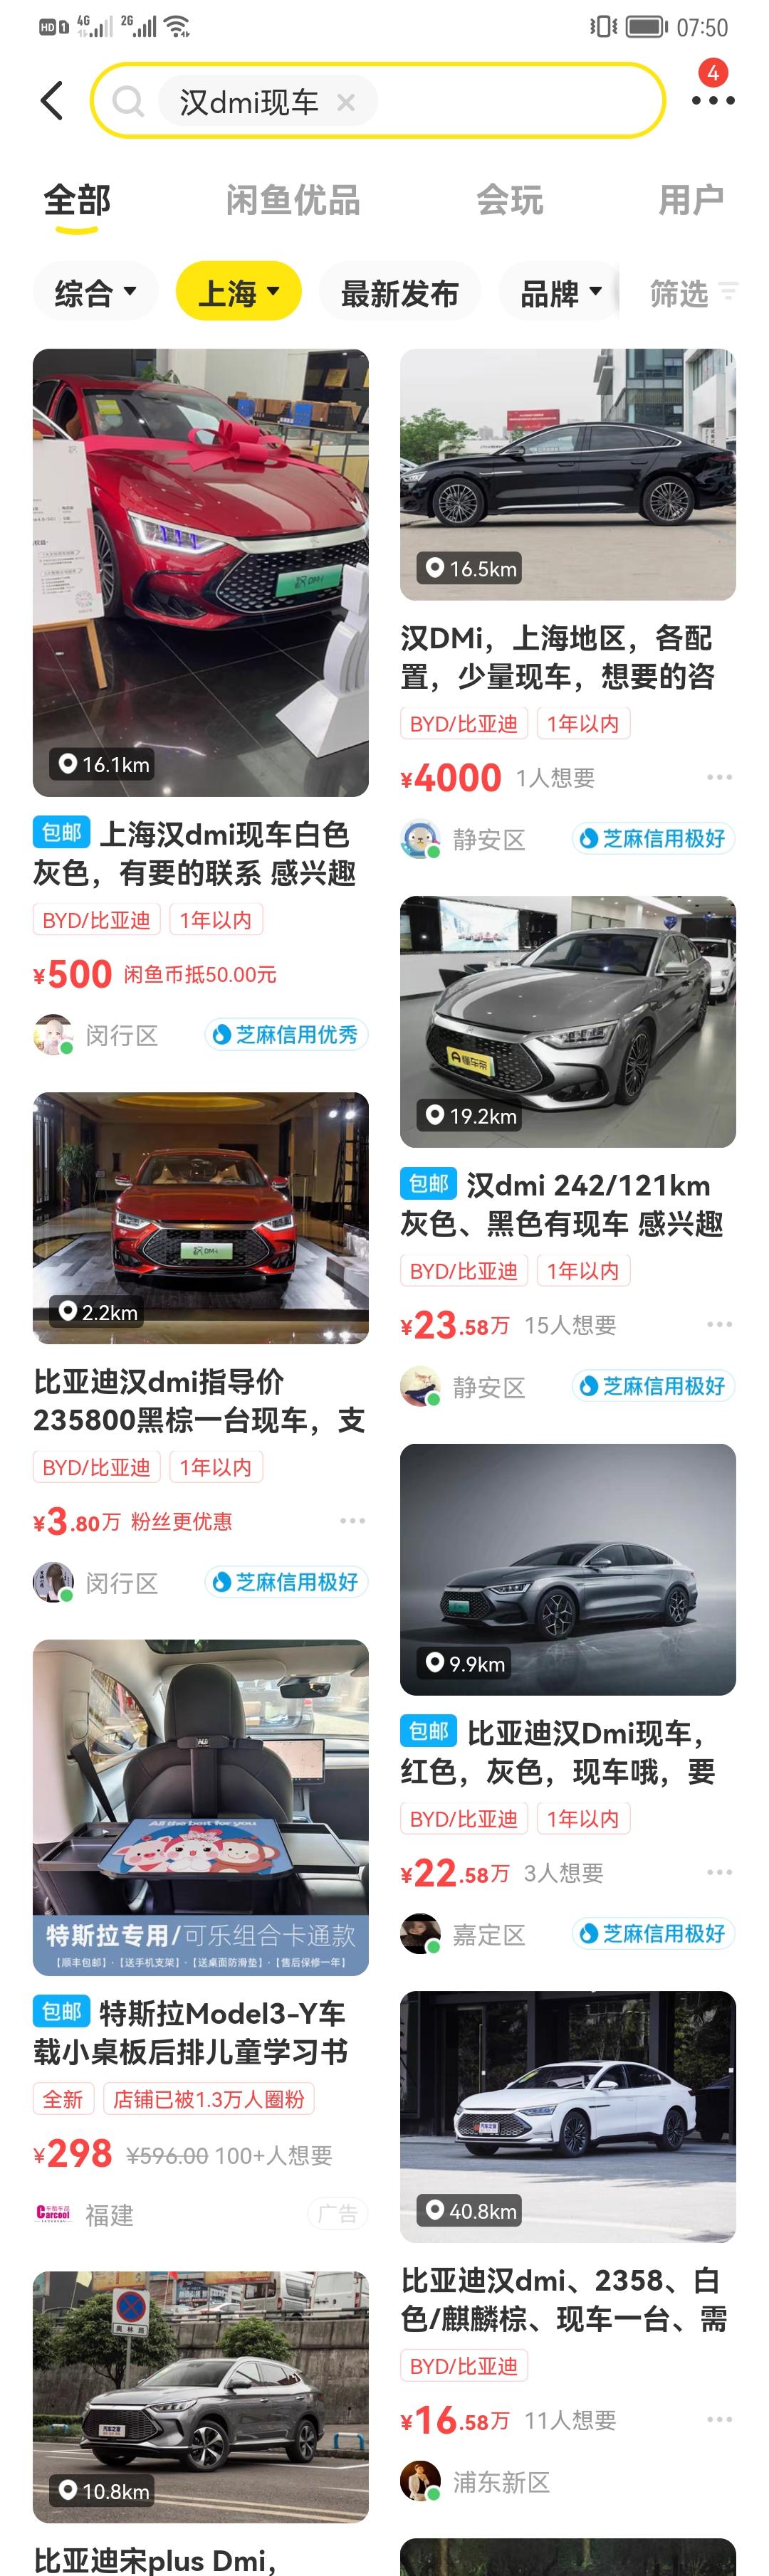 比亚迪汉DM 坐标上海，订了辆汉dmi尊荣黑色，等待中。发现闲鱼上都是卖现车的，找了几个咨询了下，加价4000或3000